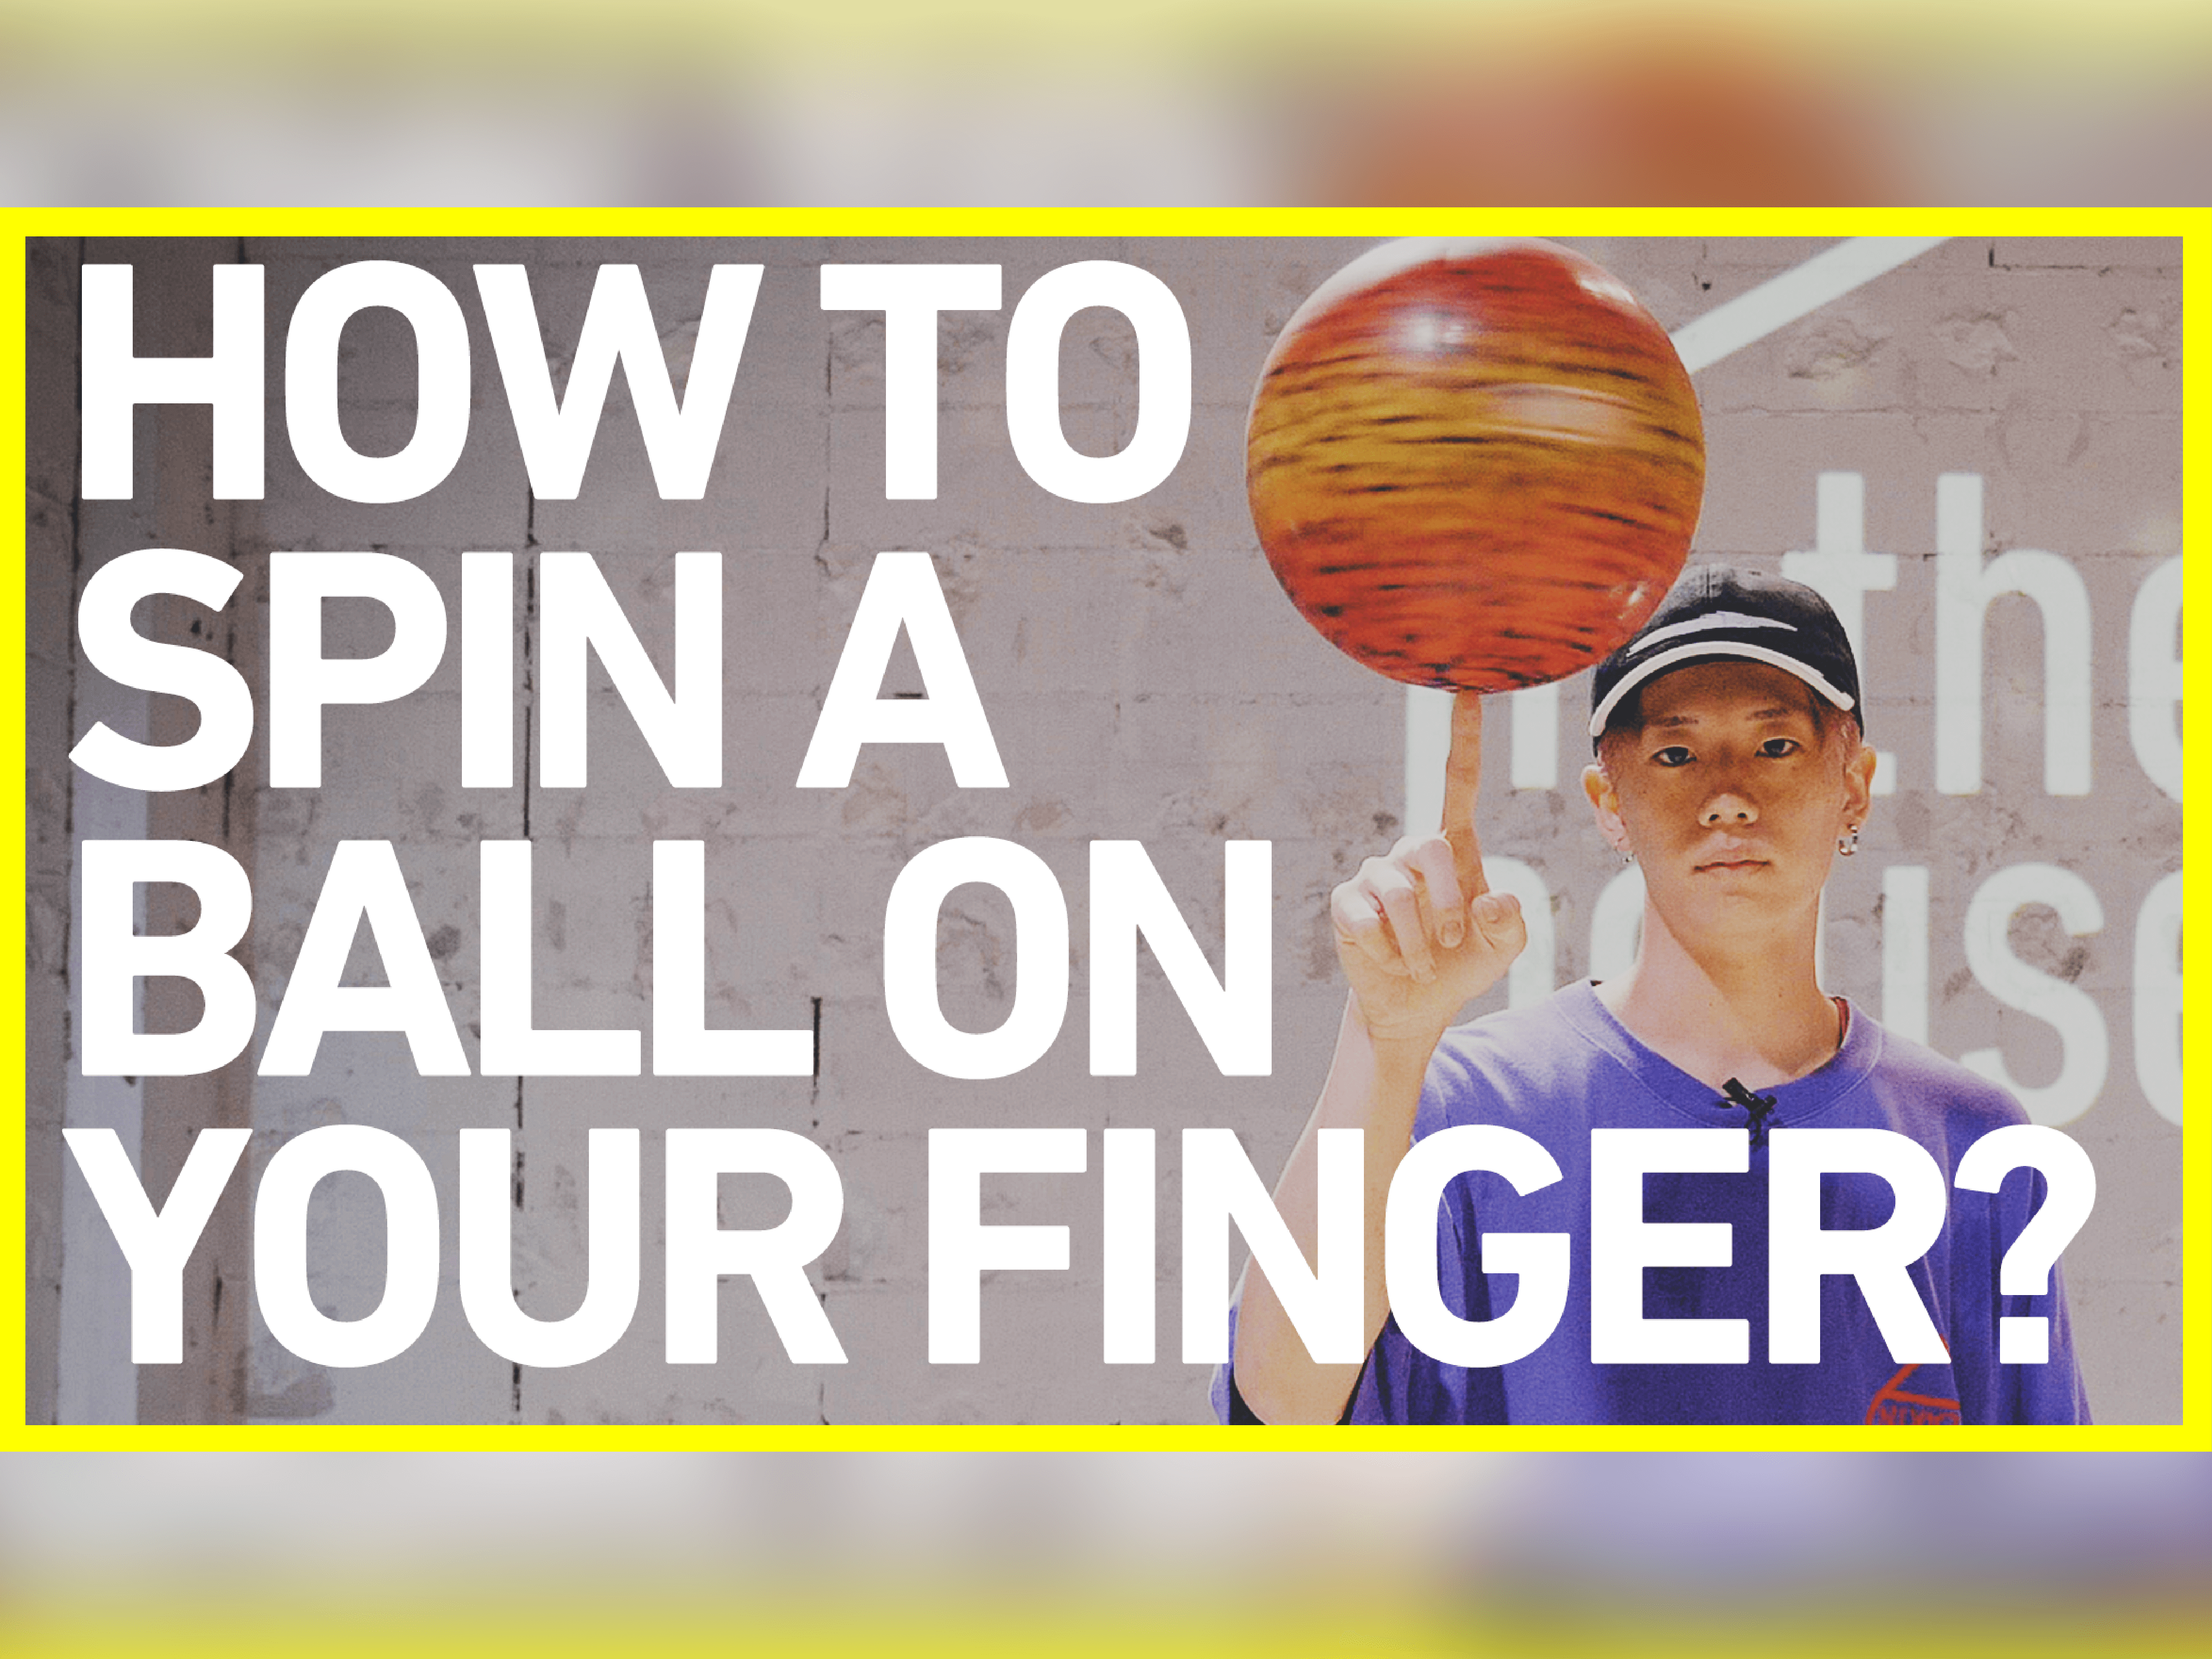 ボール回しのやり方 Fsbb Basics 1 How To Spin A Ball On Your Finger Freestyle Basketball インザハウス 駅徒歩30秒の新宿最安レンタルスタジオ Inthehouse